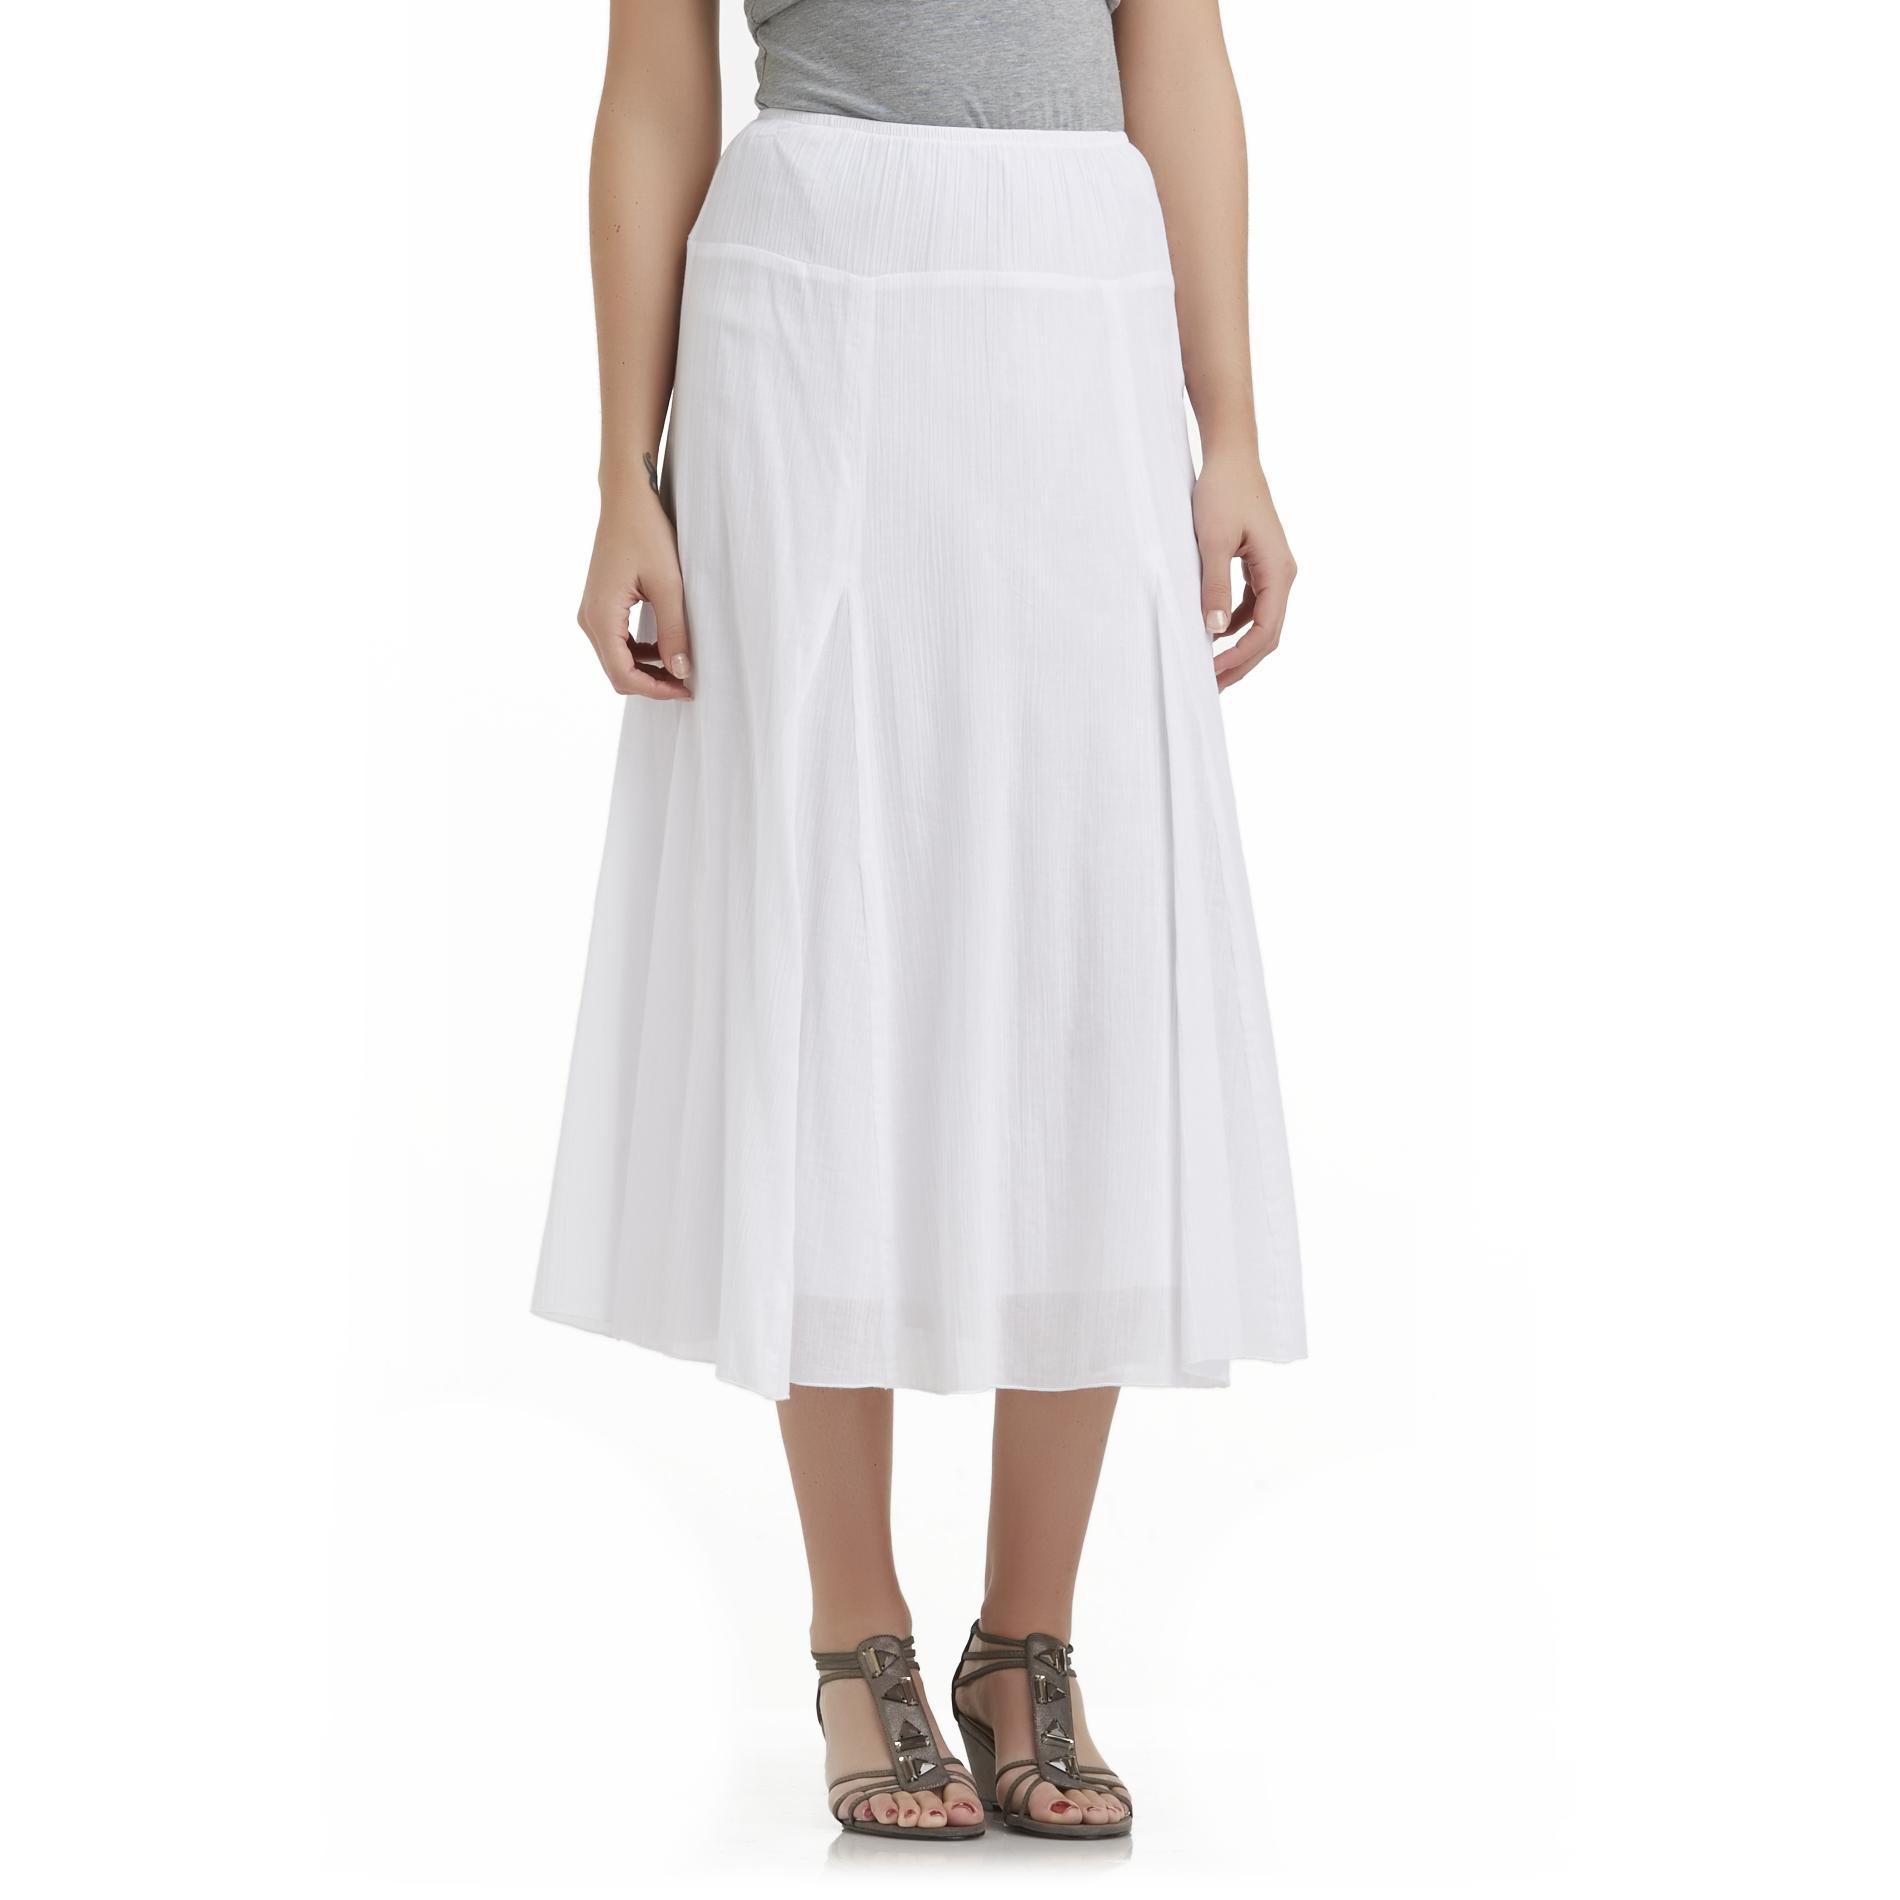 Sapphire Star Women's Gored Crepe Skirt